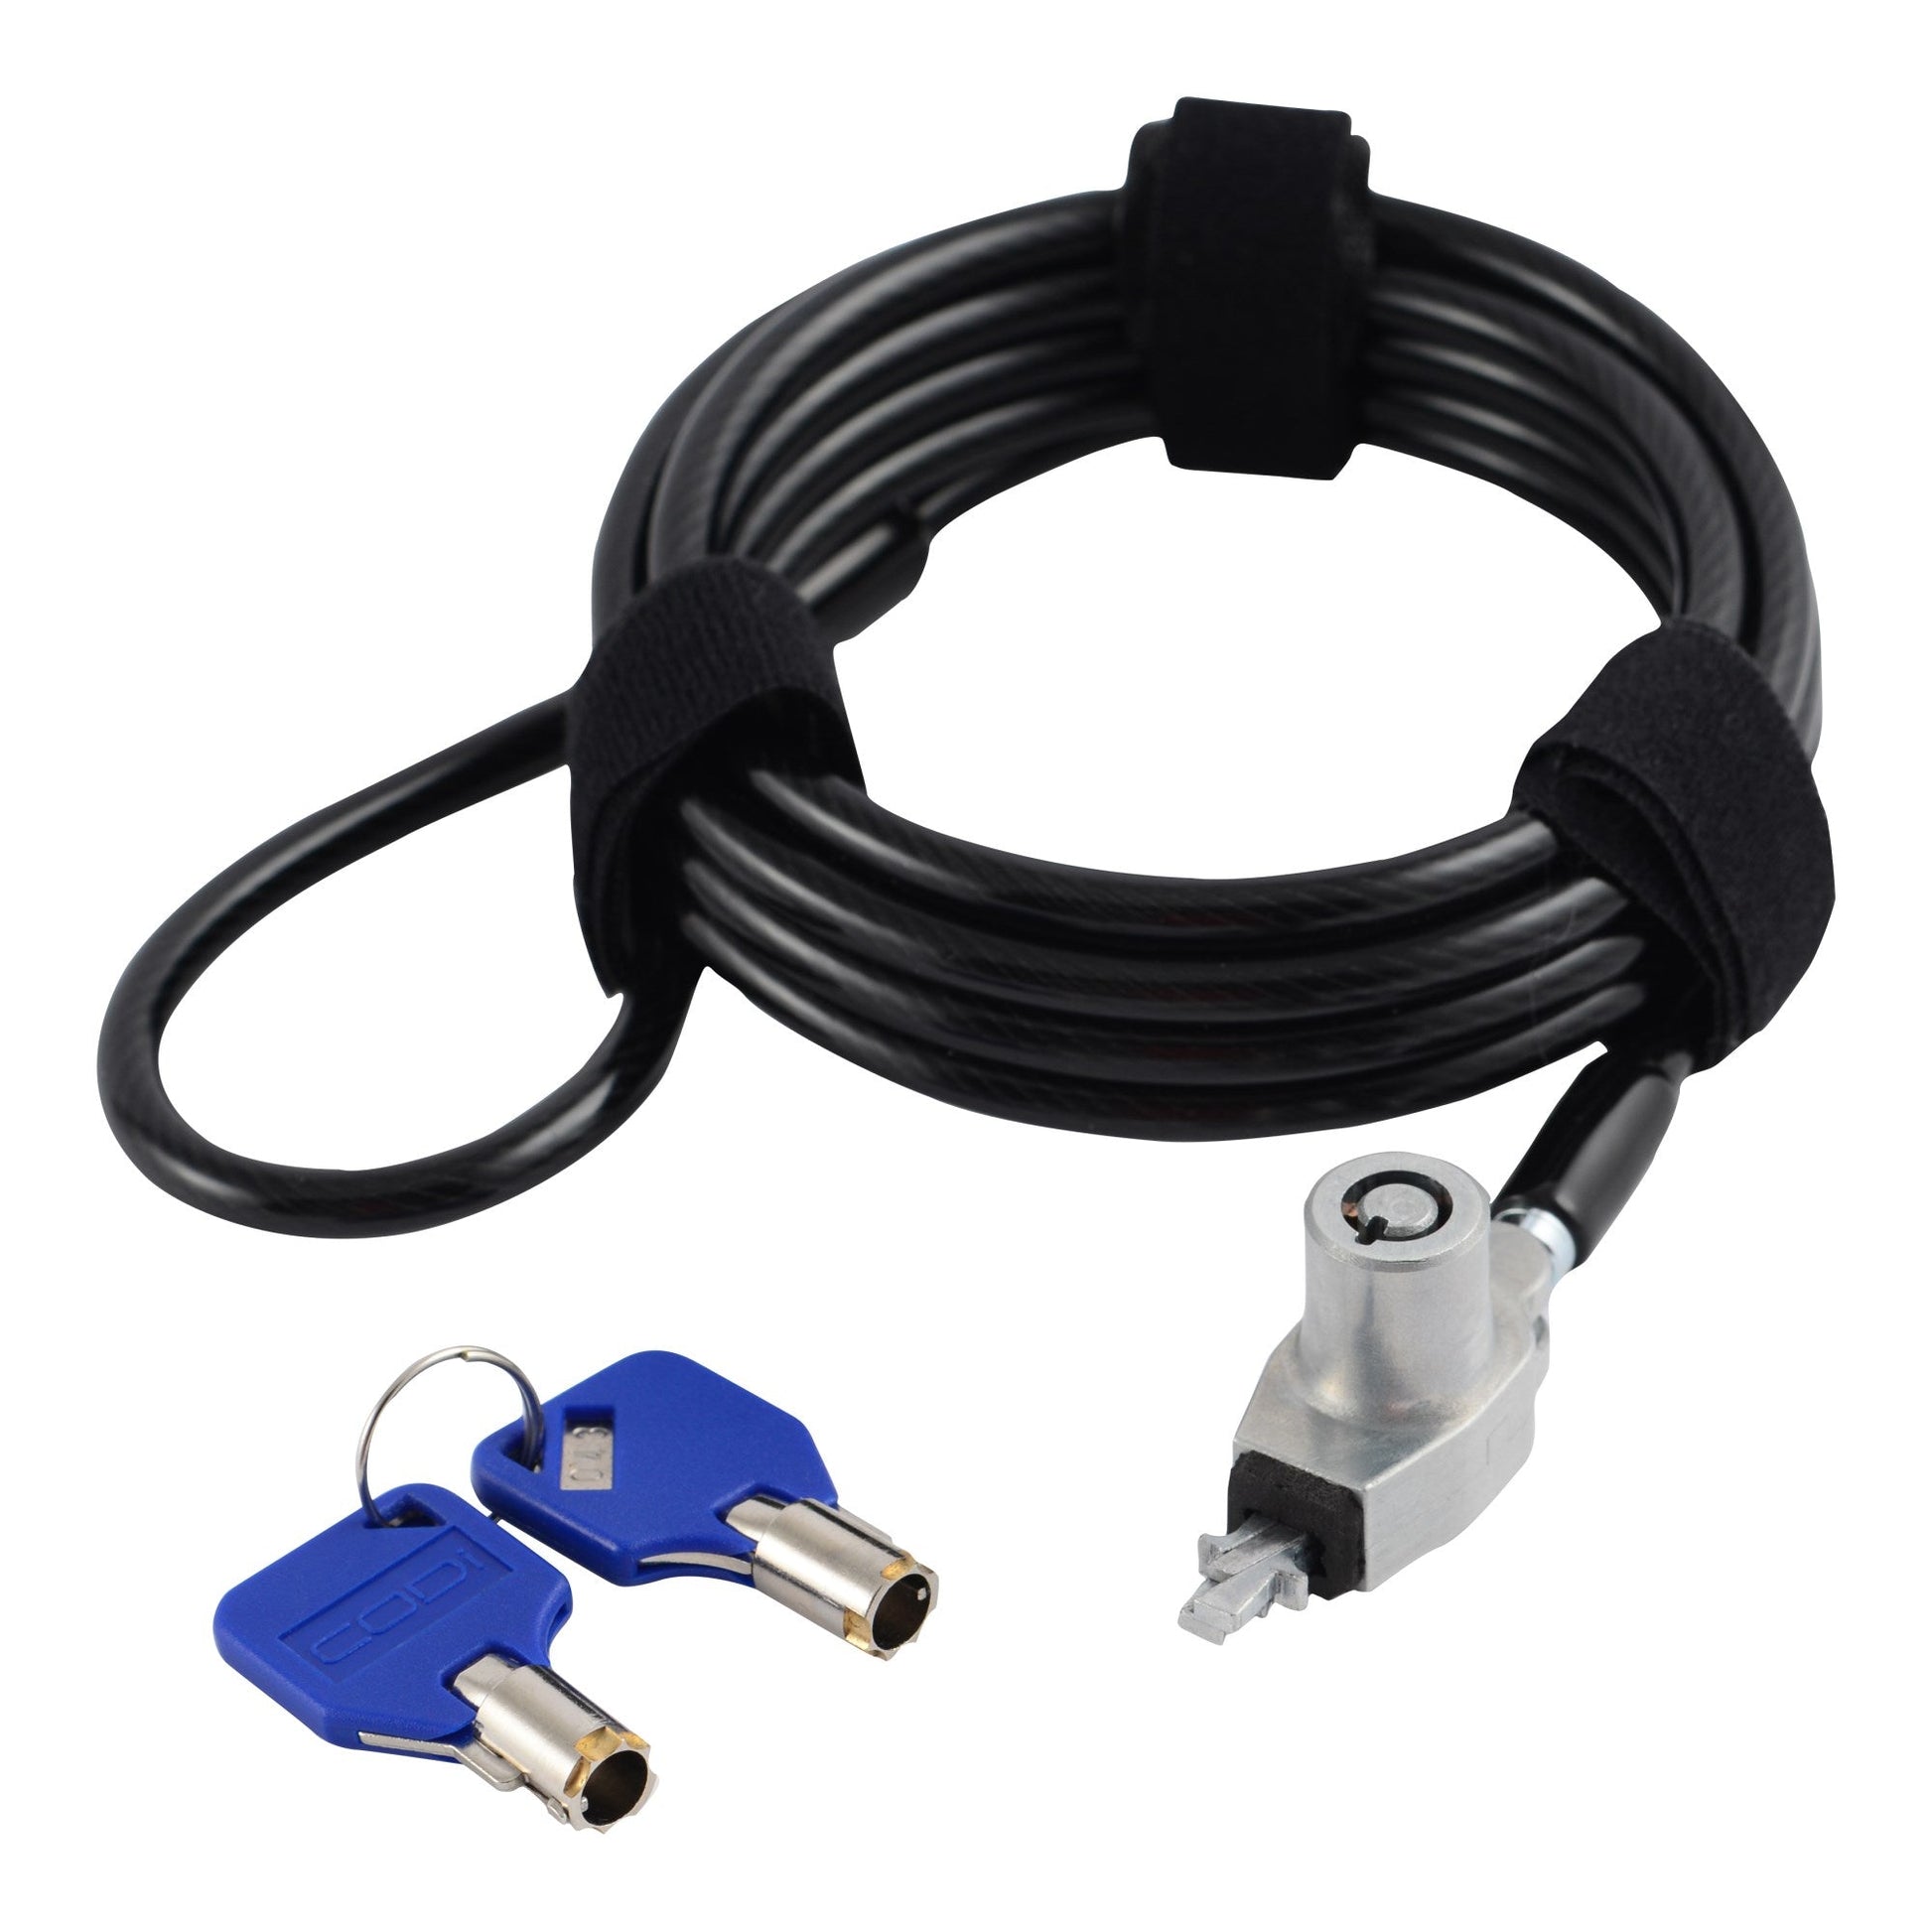 Codi A02018 Adjustable Loop Cable Lock